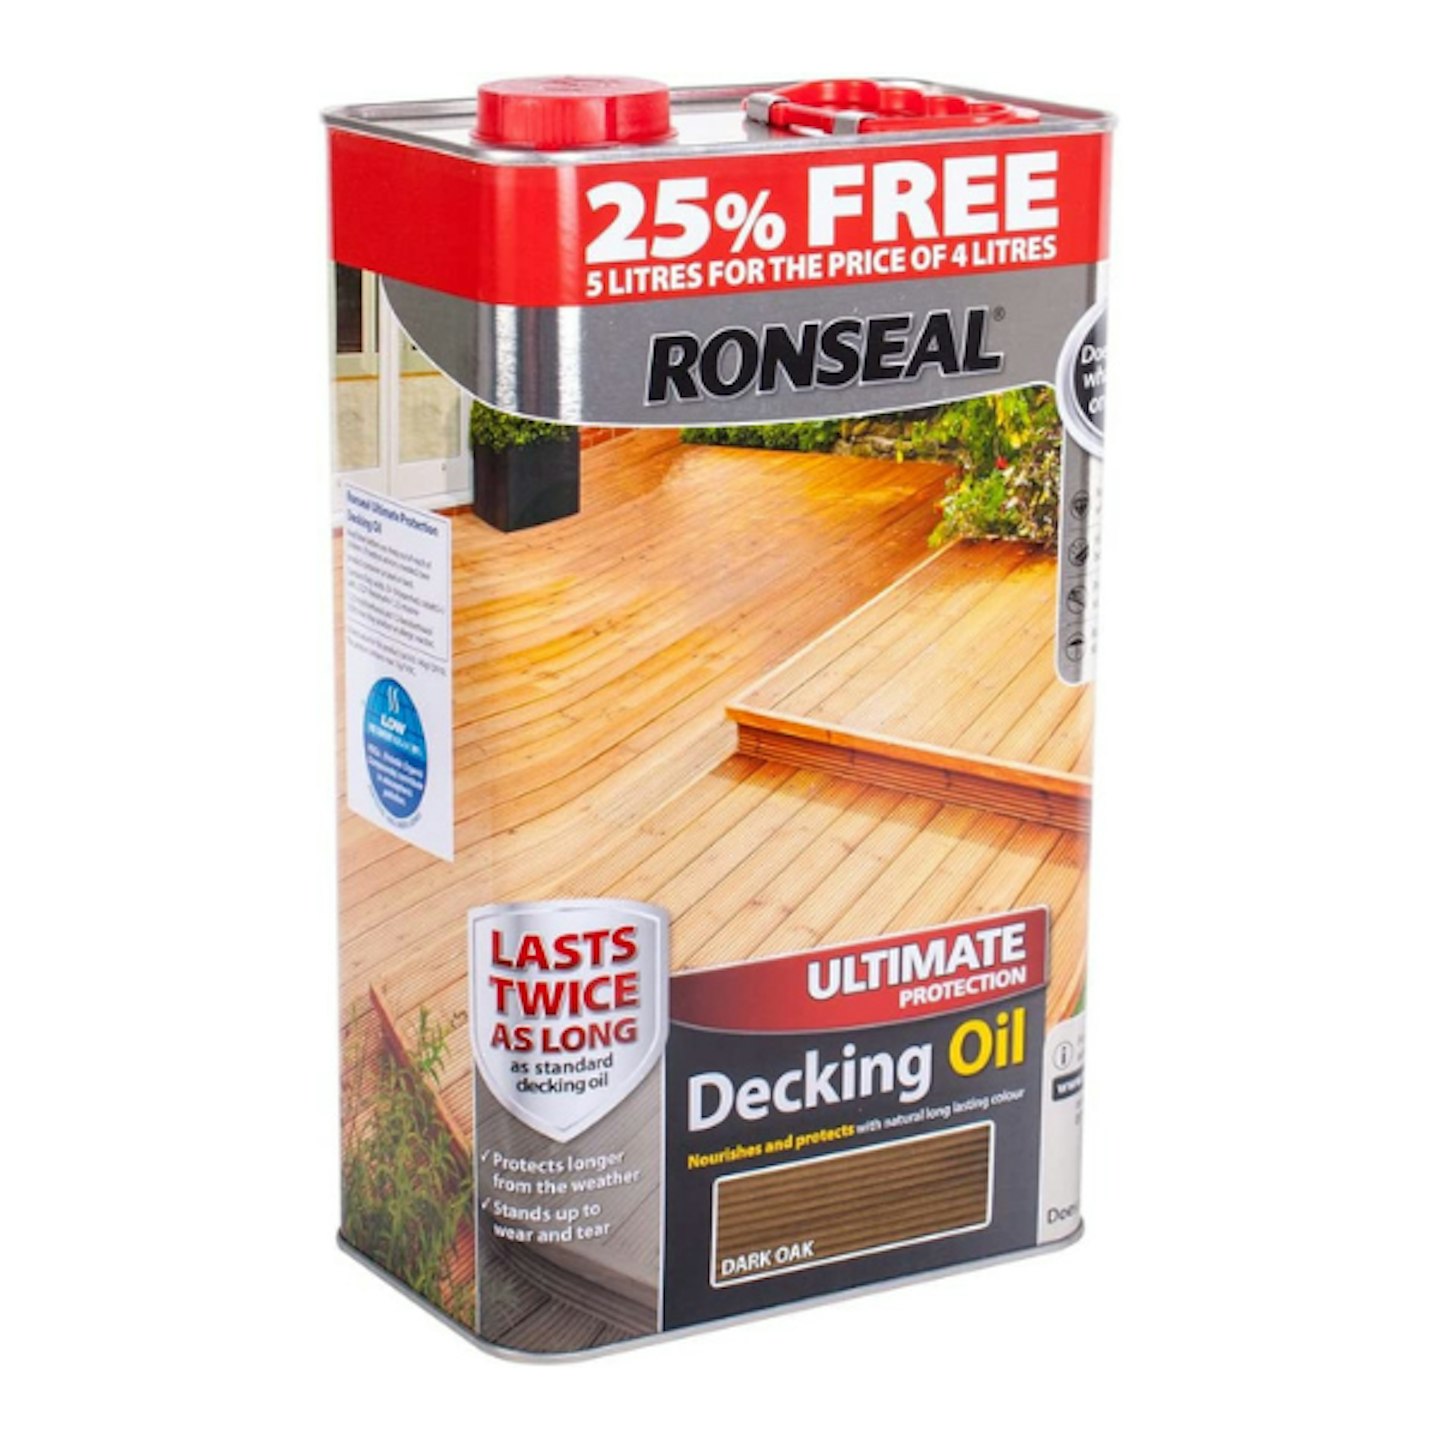 Ronseal RSLUDODO4LAV Ultimate Protection Decking Oil, Dark Oak, 5 Litre